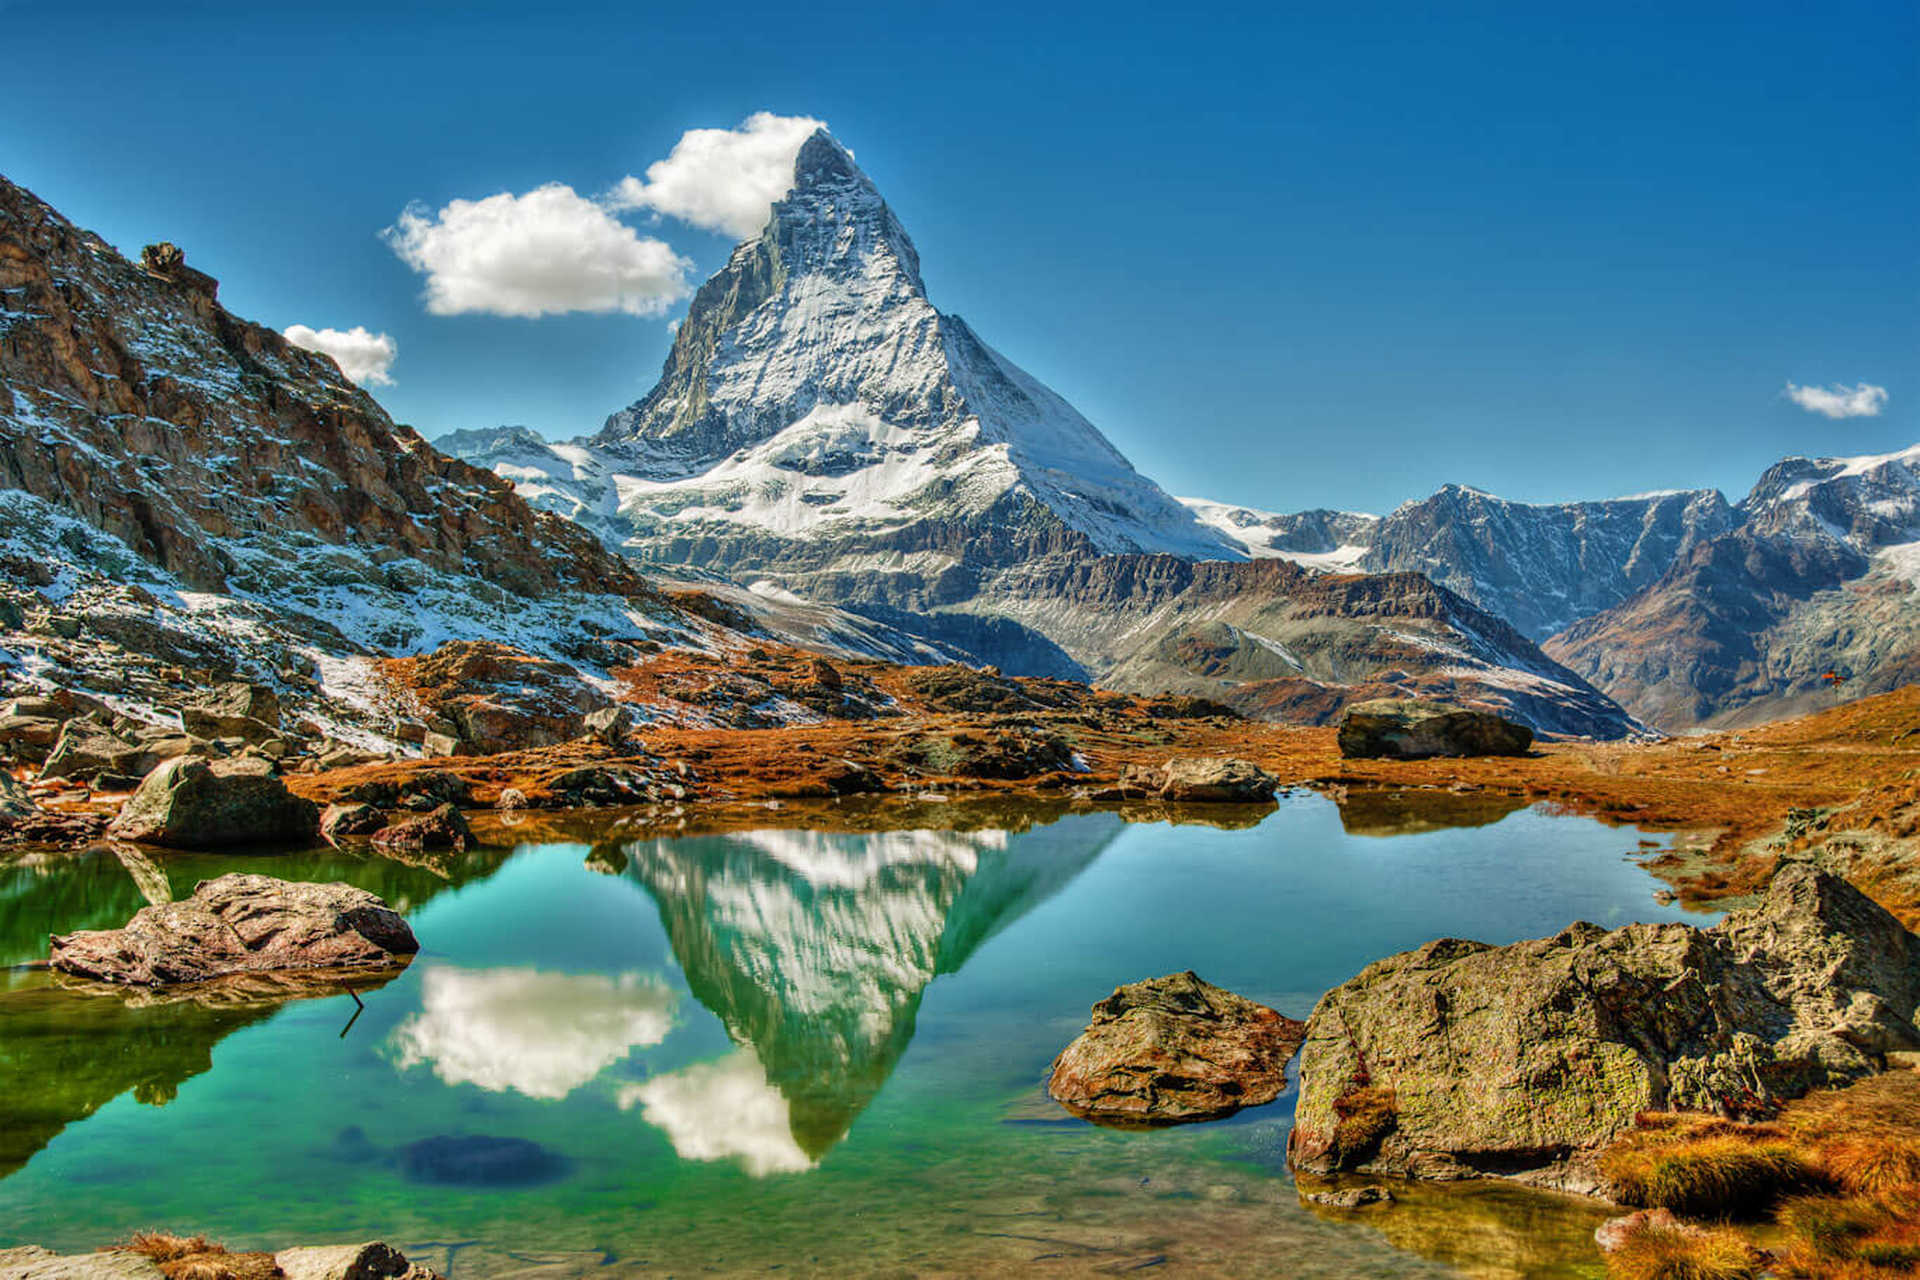 Matterhorn in the Alps